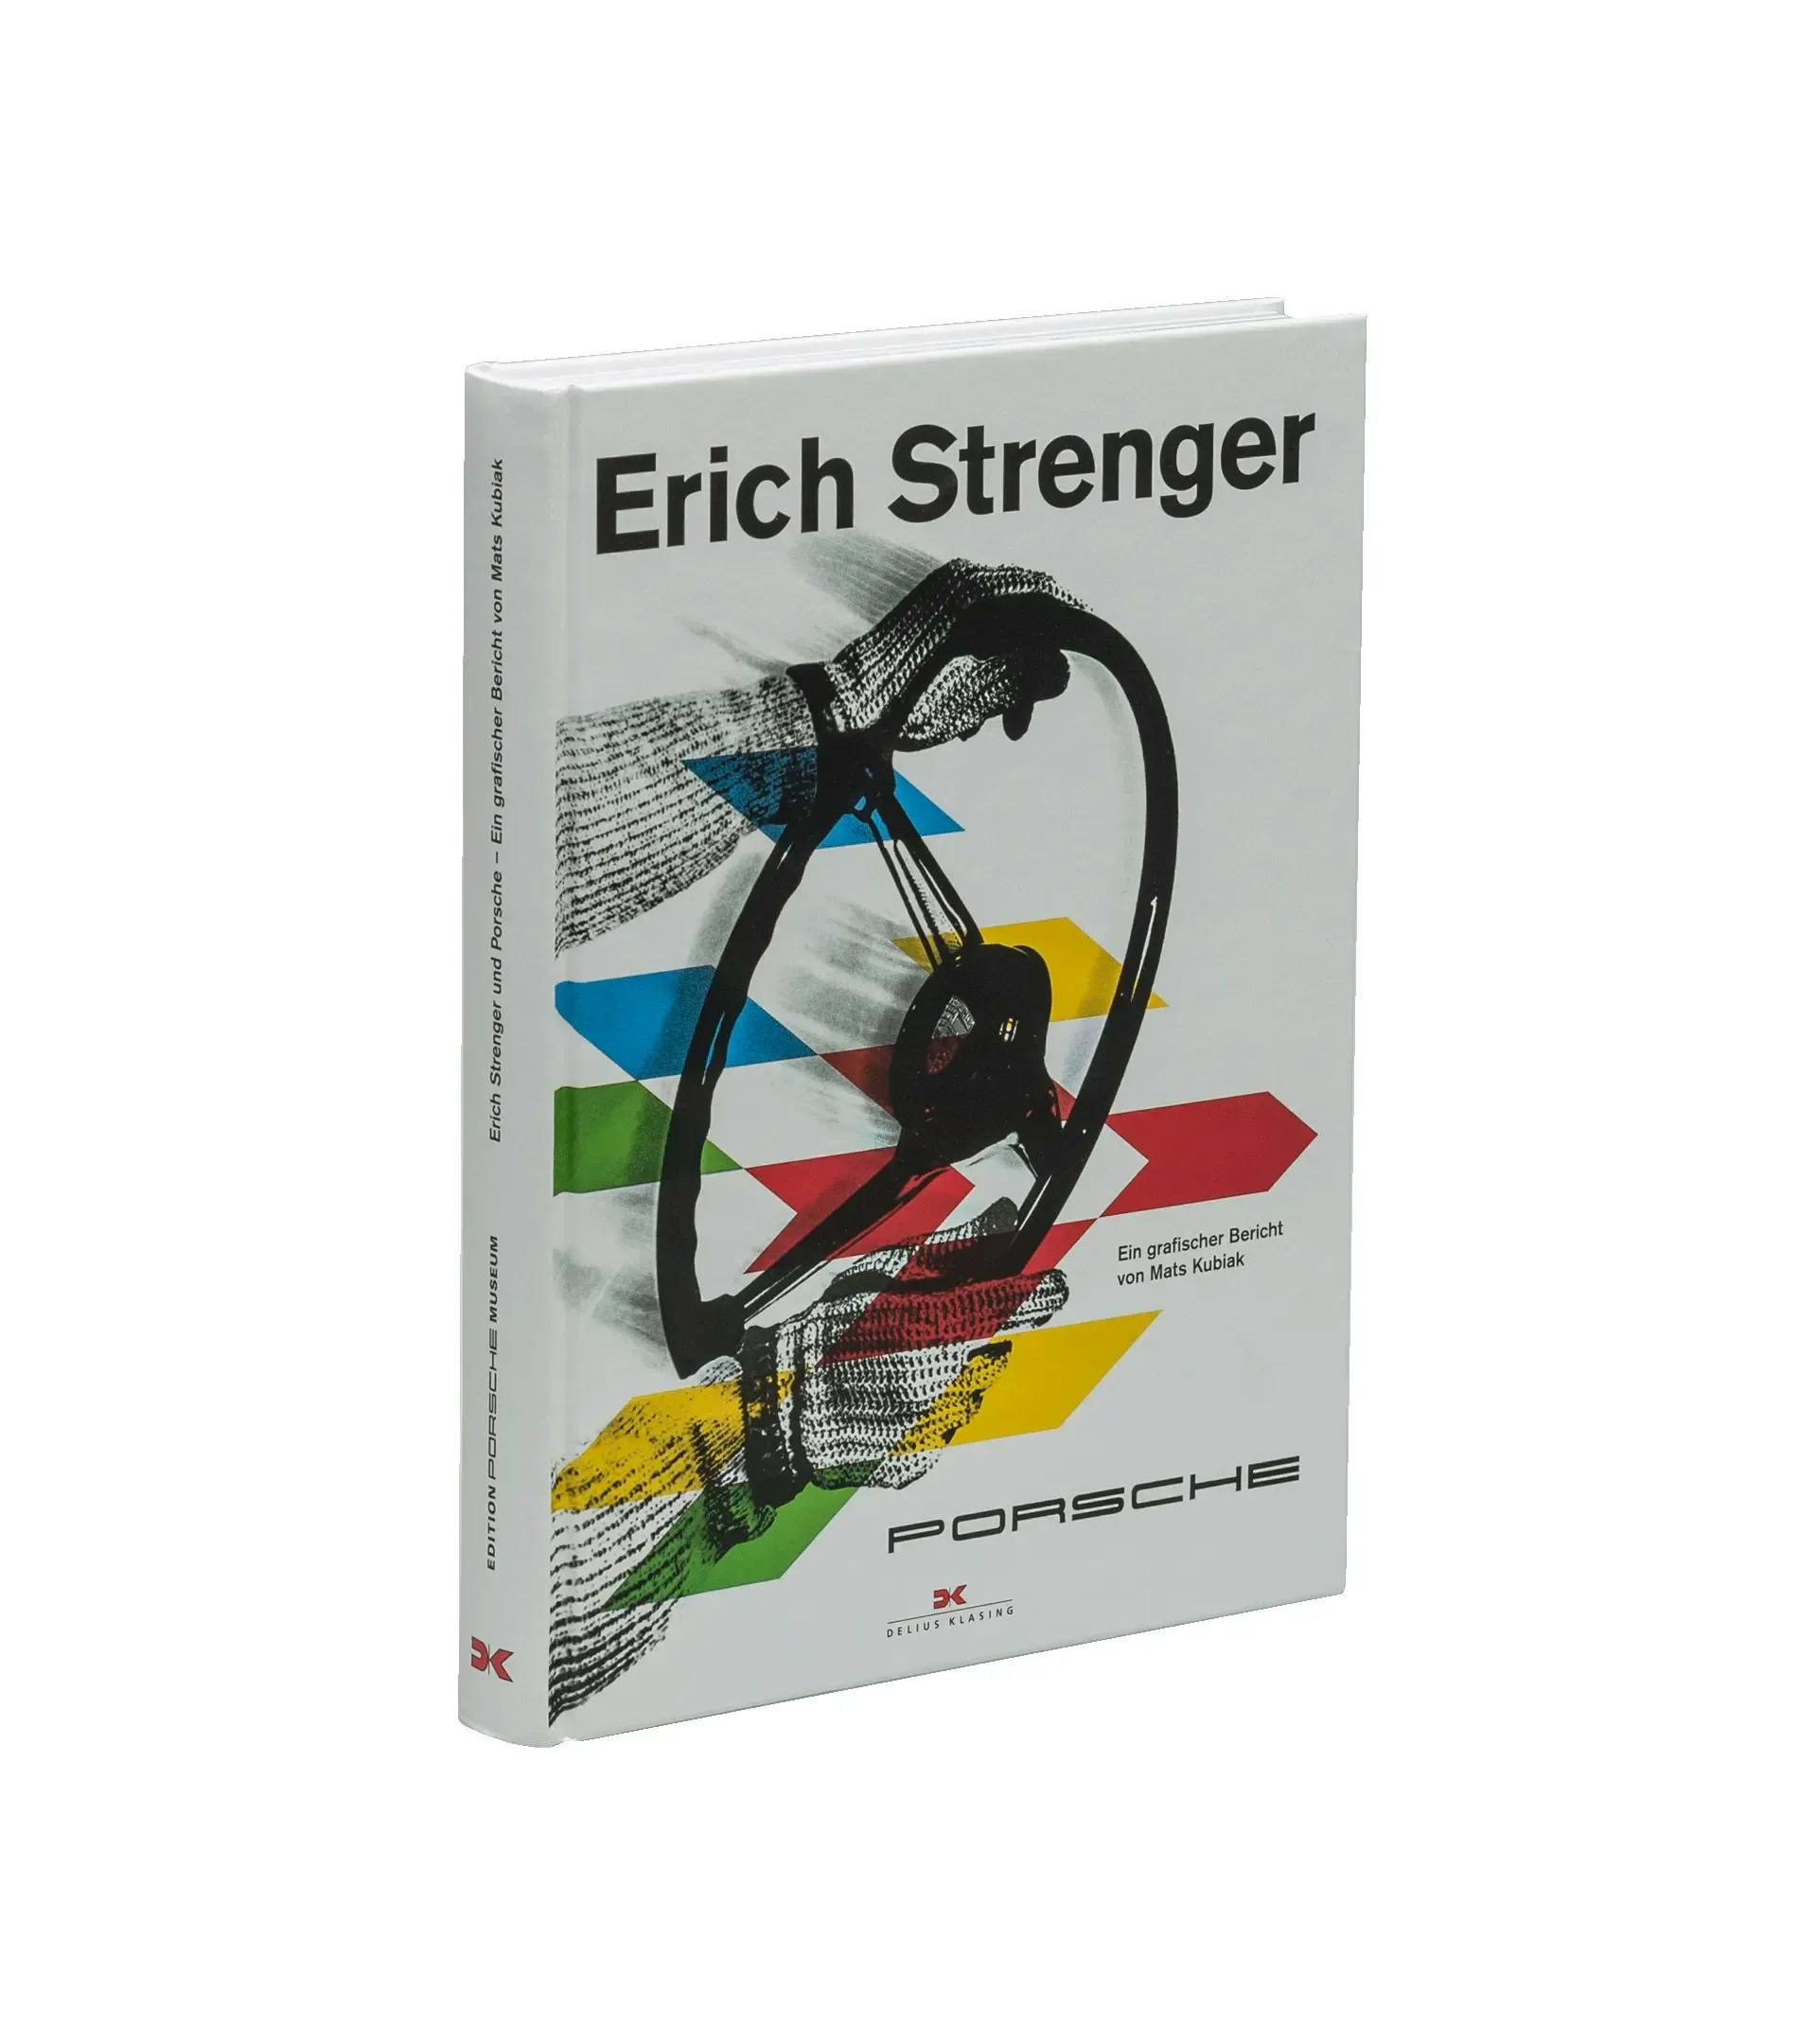 Livre E. Strenger und Porsche (EPM) 1